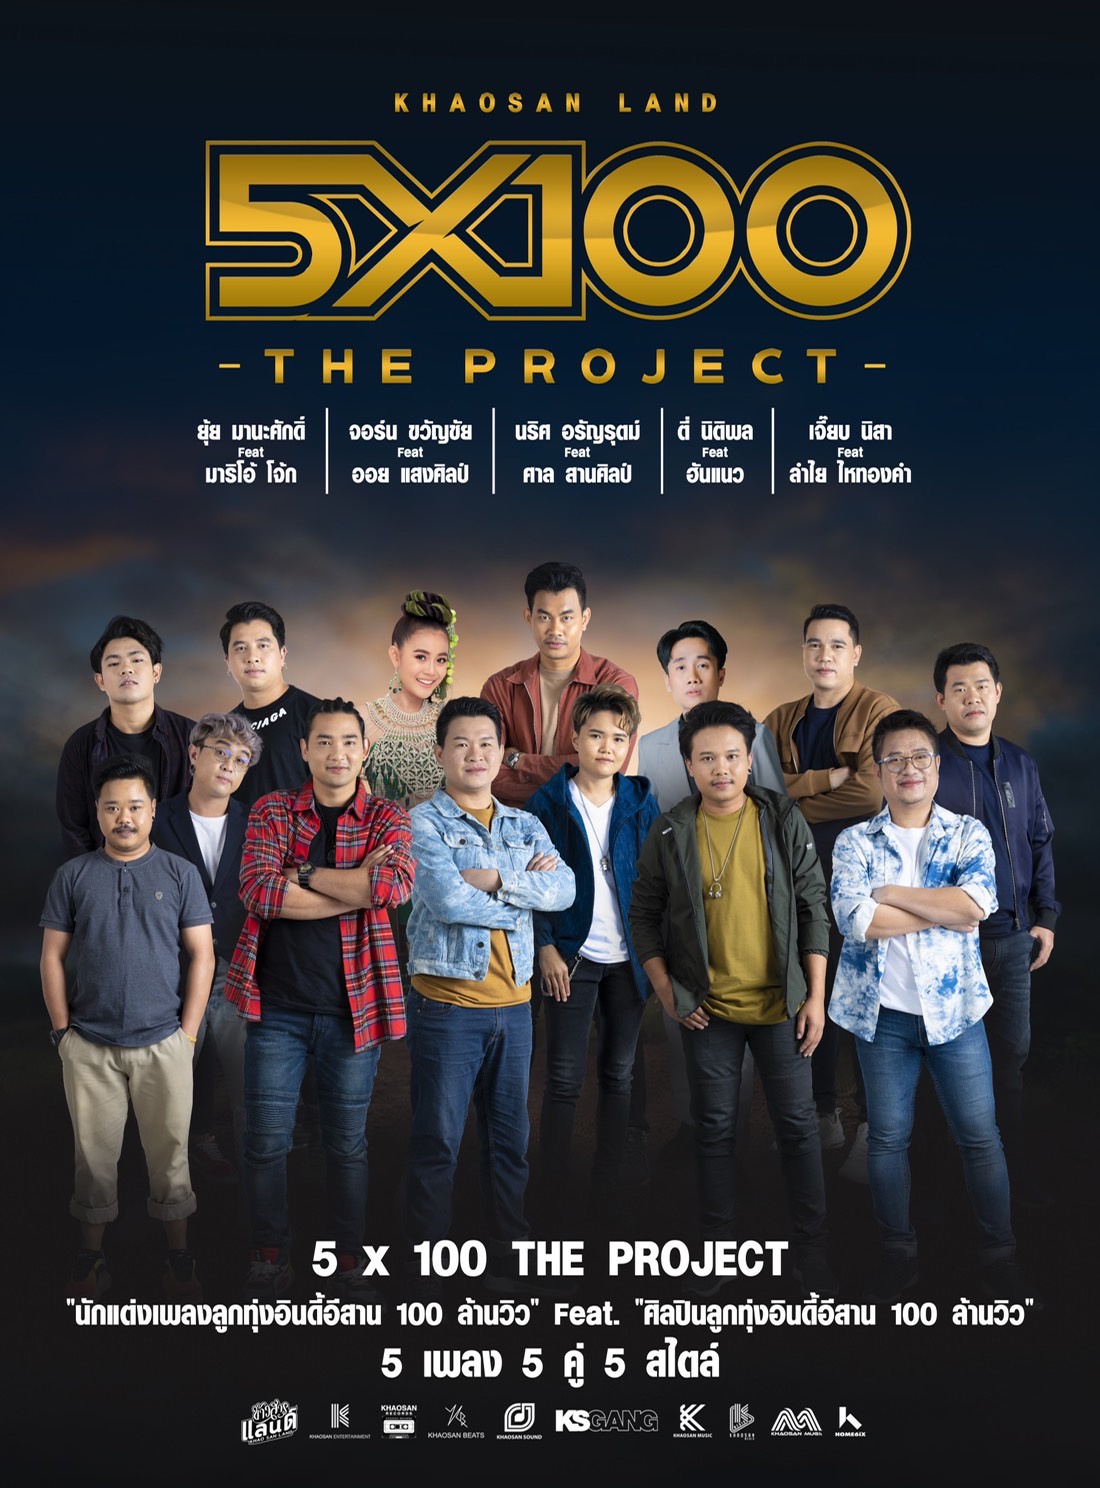 การรวมตัวครั้งยิ่งใหญ่ของวงการเพลงลูกทุ่งอินดี้ Khaosan Land 5x100 The Project นักเขียนร้อยล้าน ฟีทเจอริ่ง